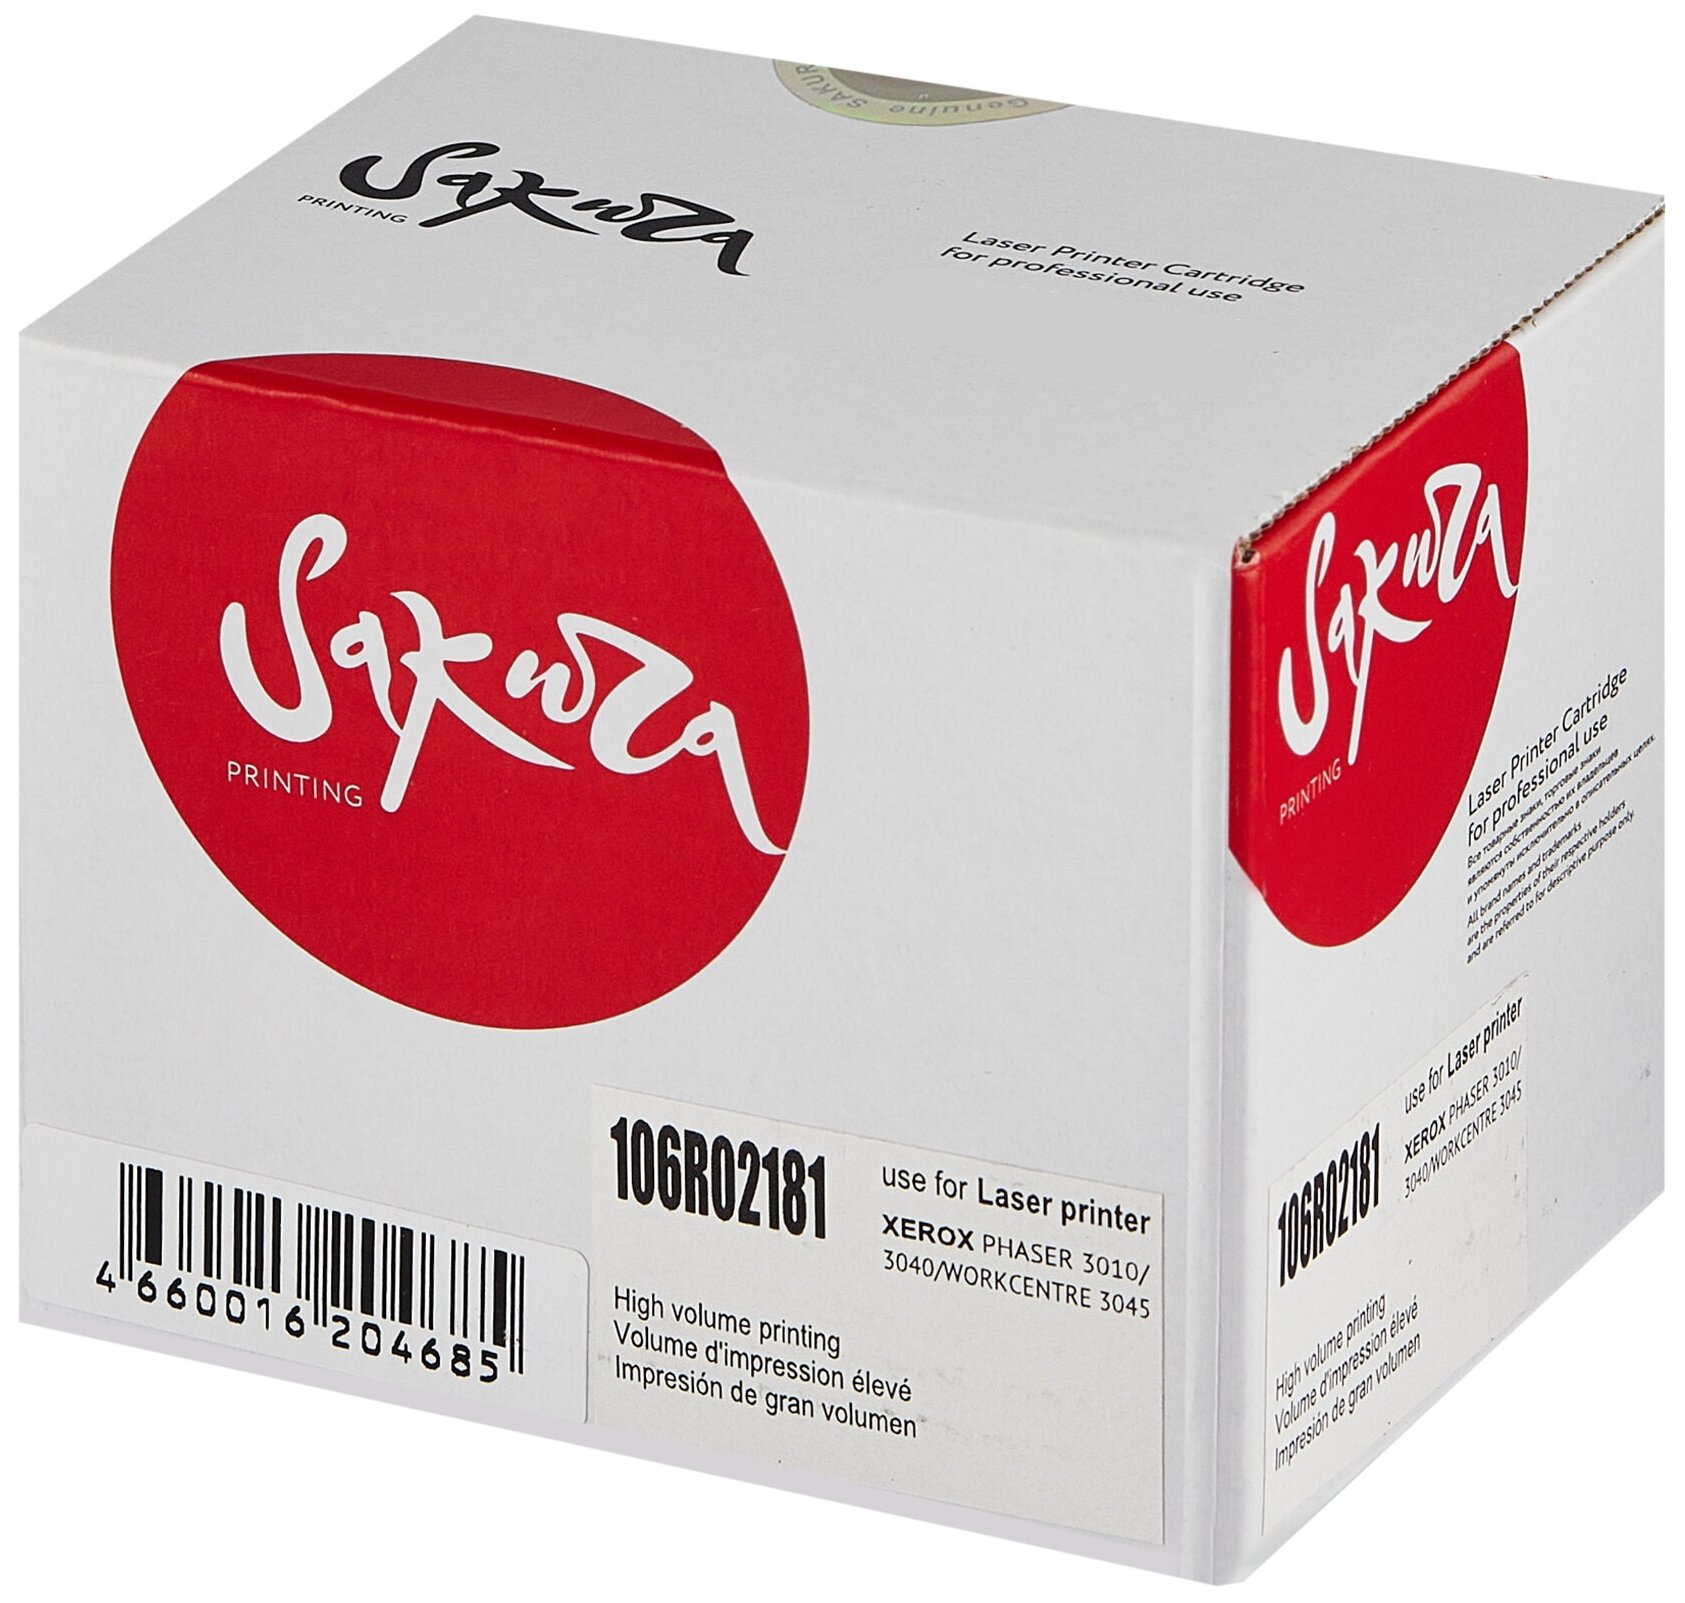 Картридж 106R02181 для XEROX, лазерный, черный, 1000 страниц, Sakura